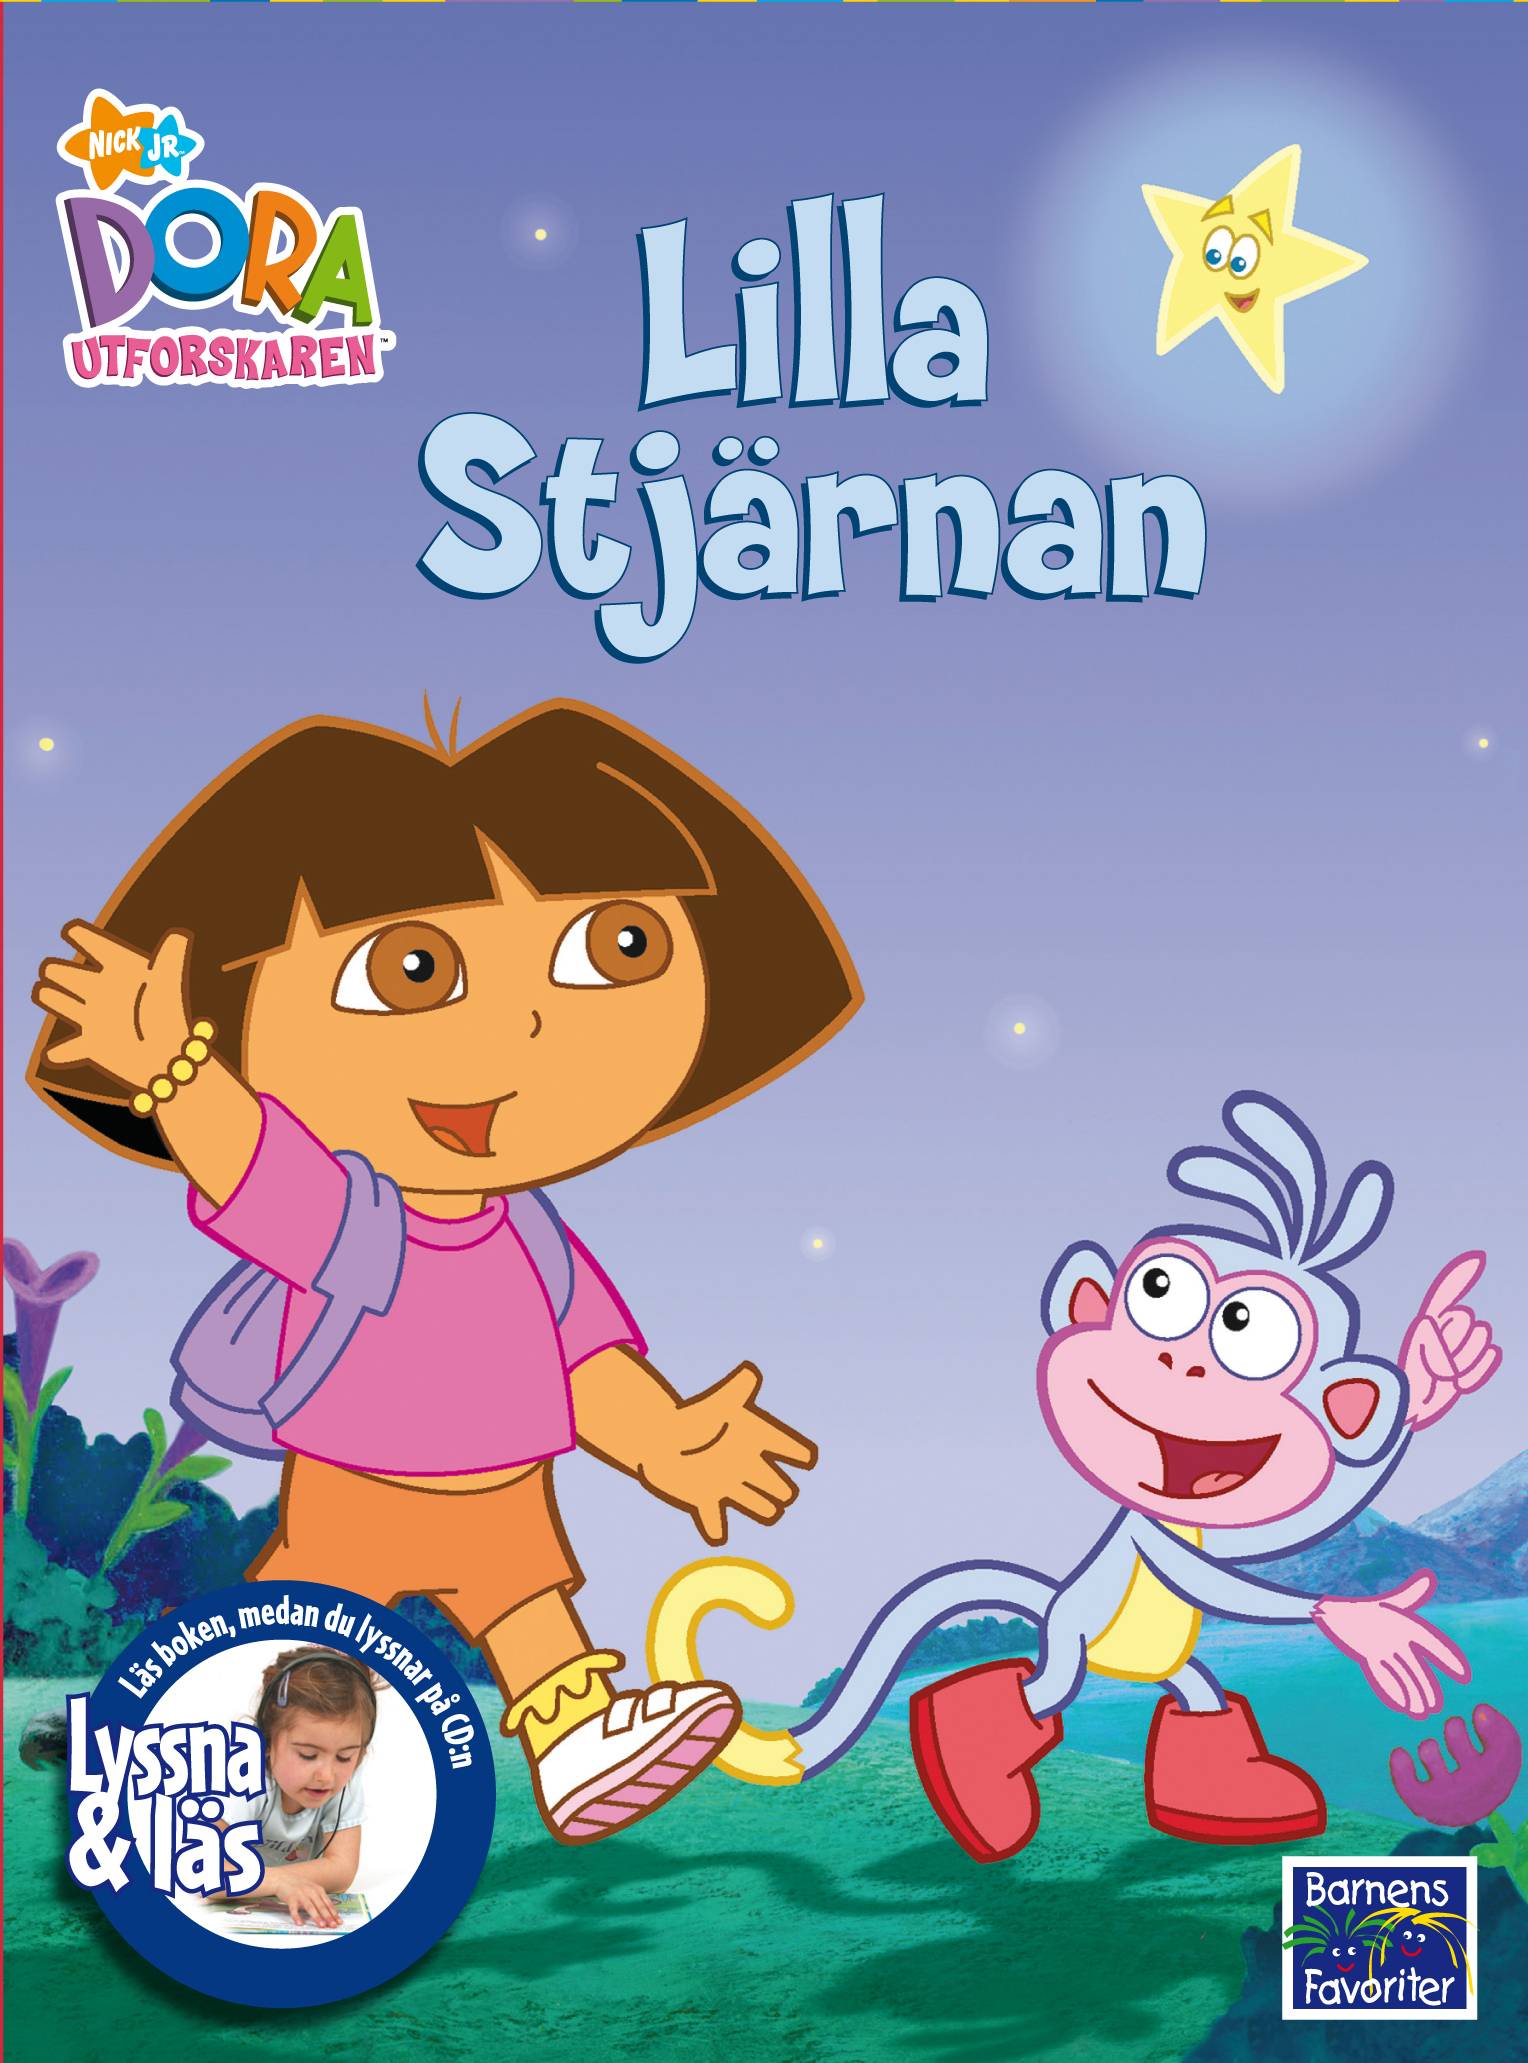 Lilla utforskaren - Lilla stjärnan (DVD Box, Lyssna & Läs)